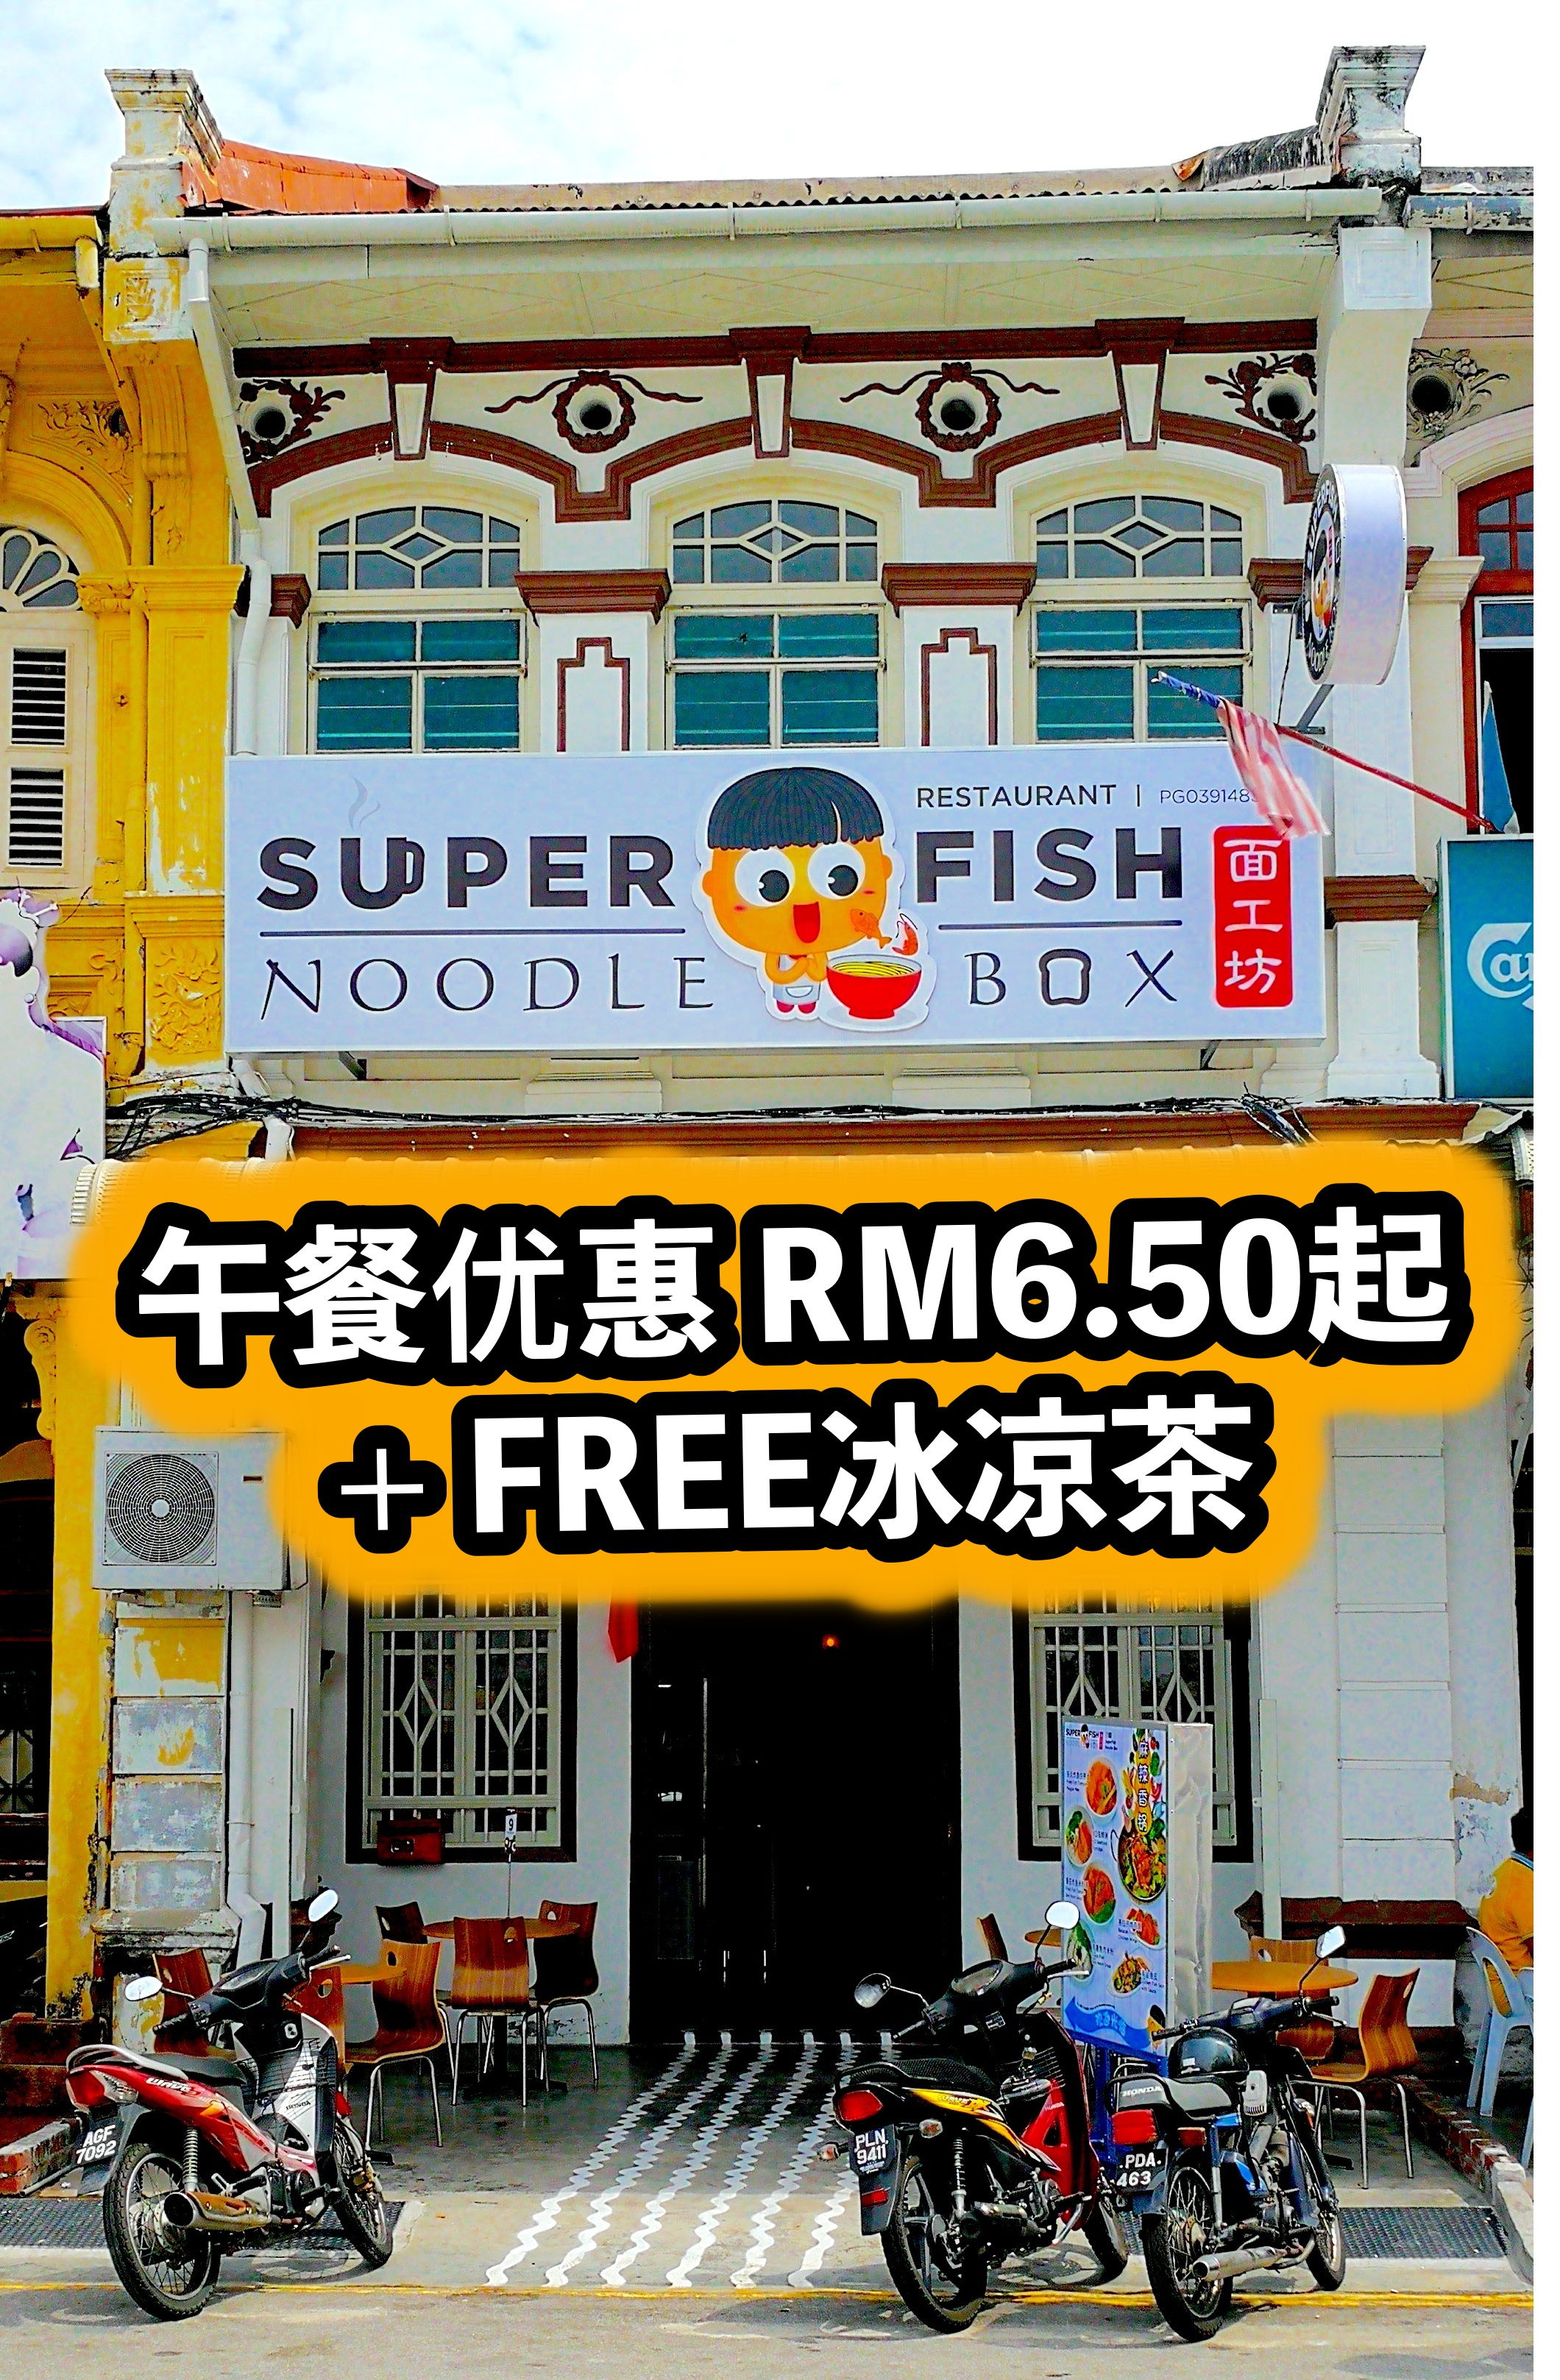 午餐优惠 RM6.50起 + FREE冰凉茶 ！#SuperFishNoodlebox 面工坊